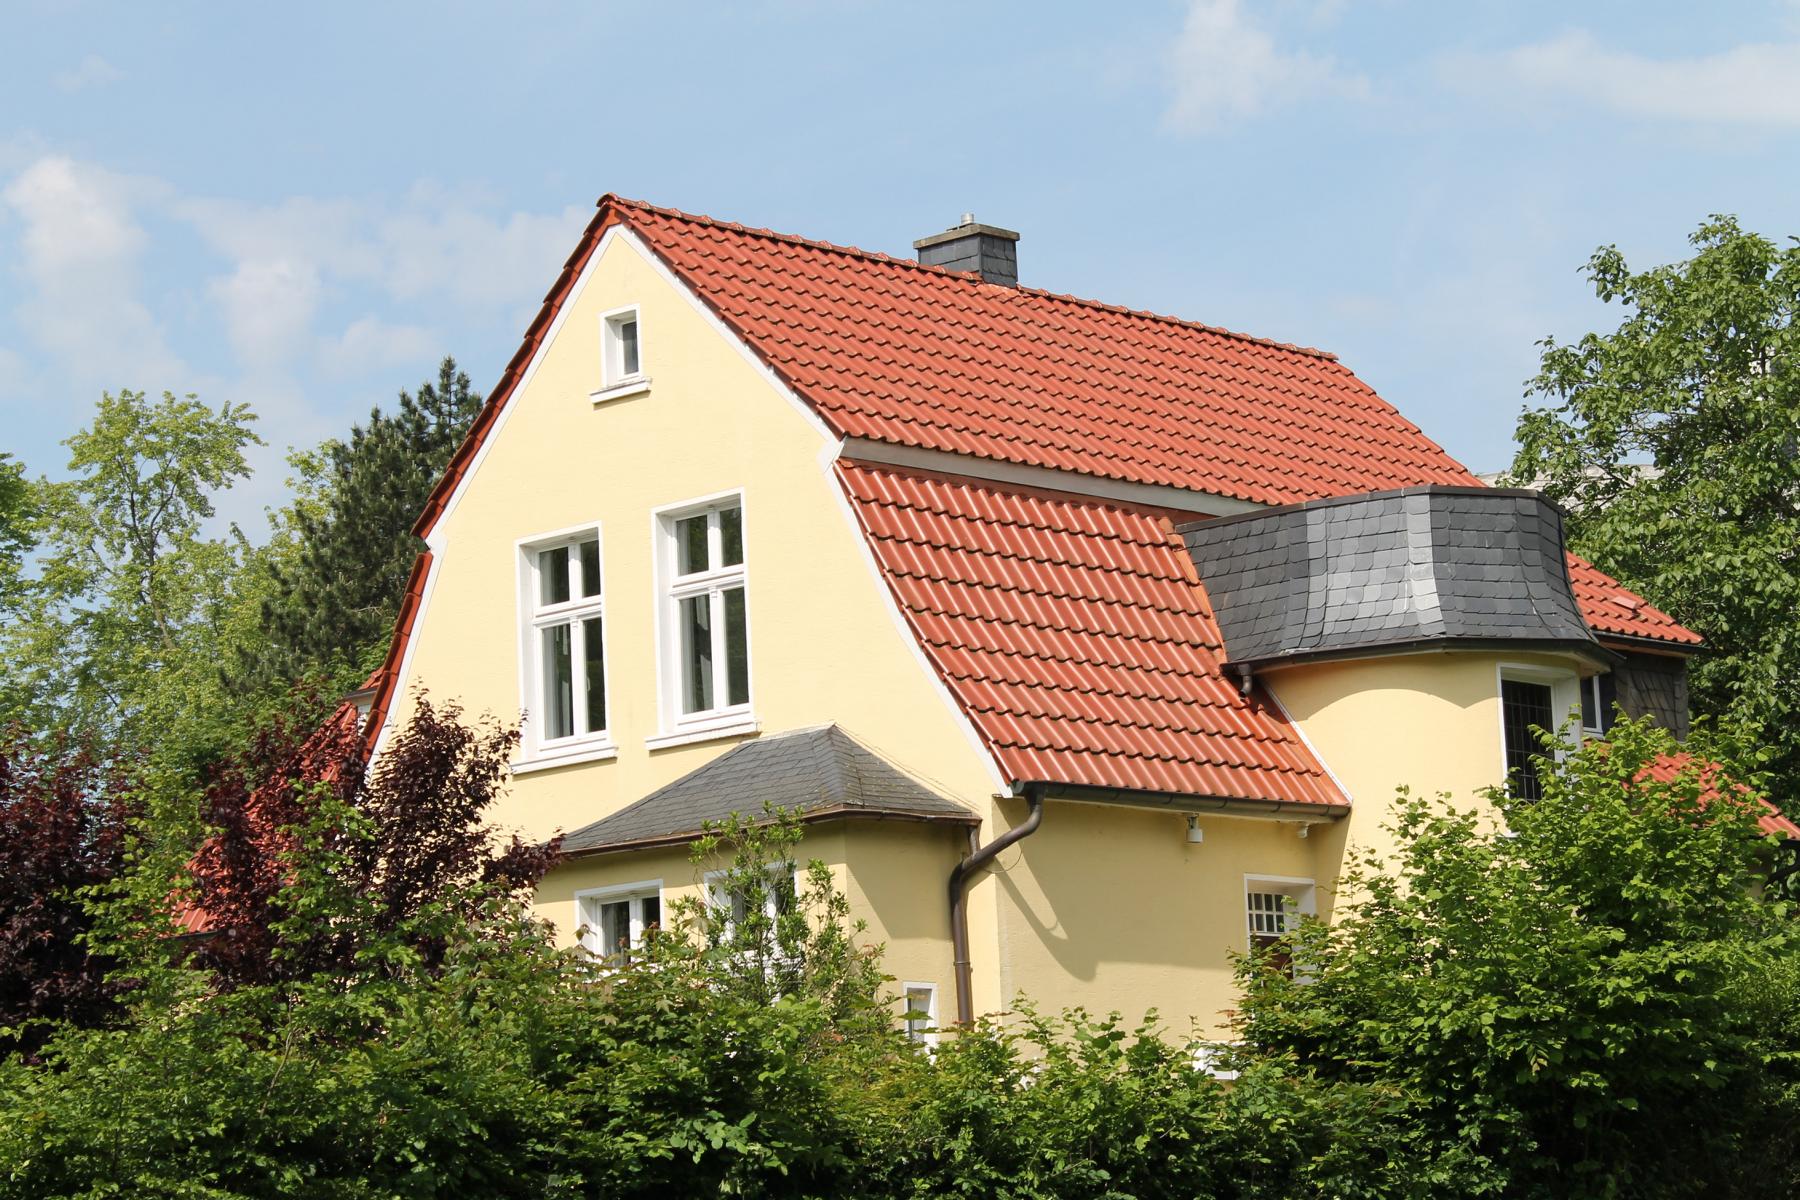 Dachsanierung Mehrfamilienhaus Referenzobjekt 55